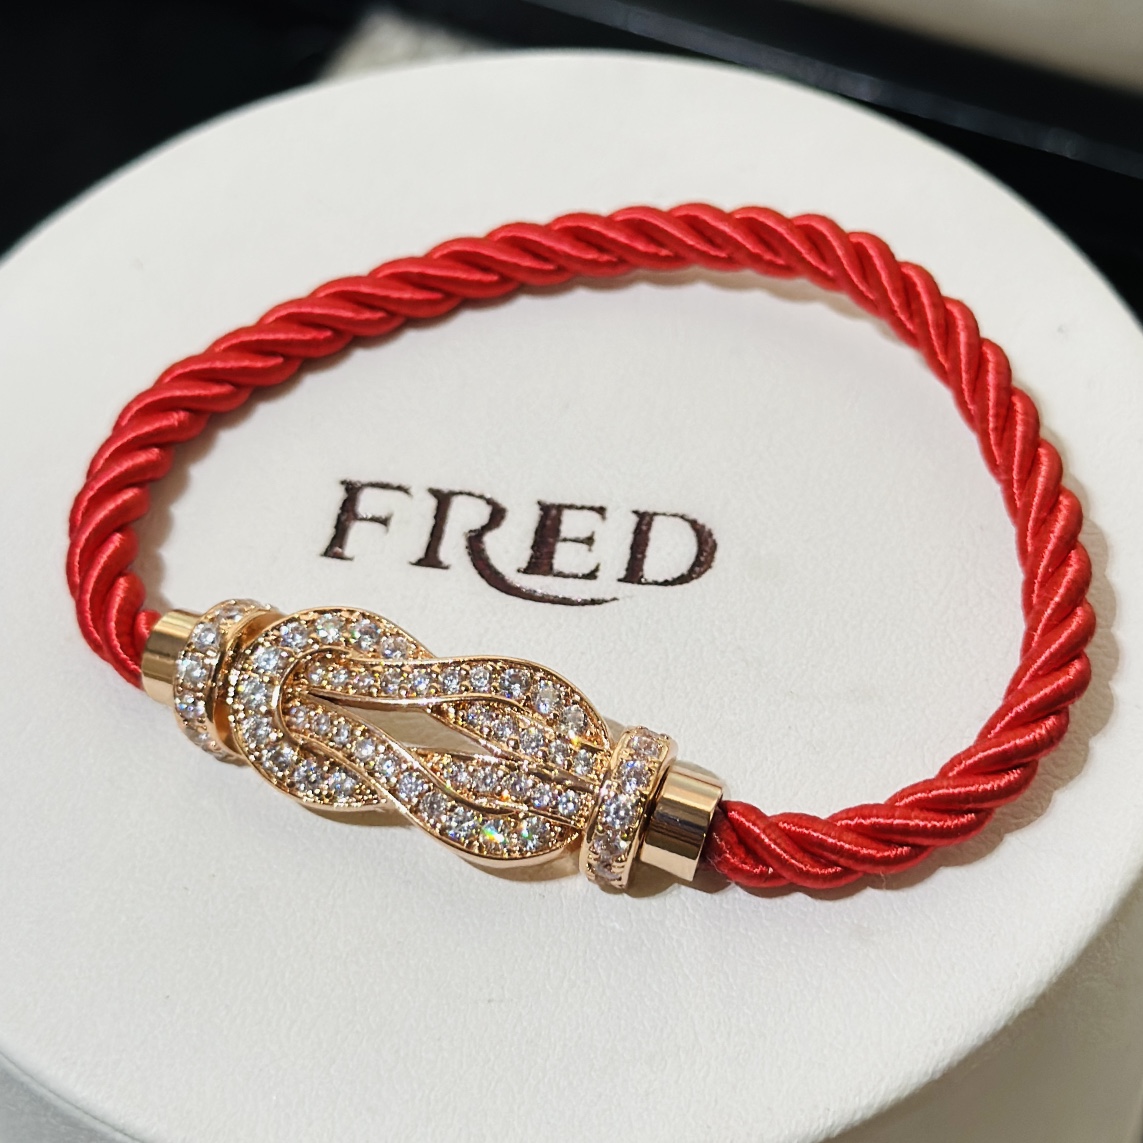 Fred Force 10 bracelet